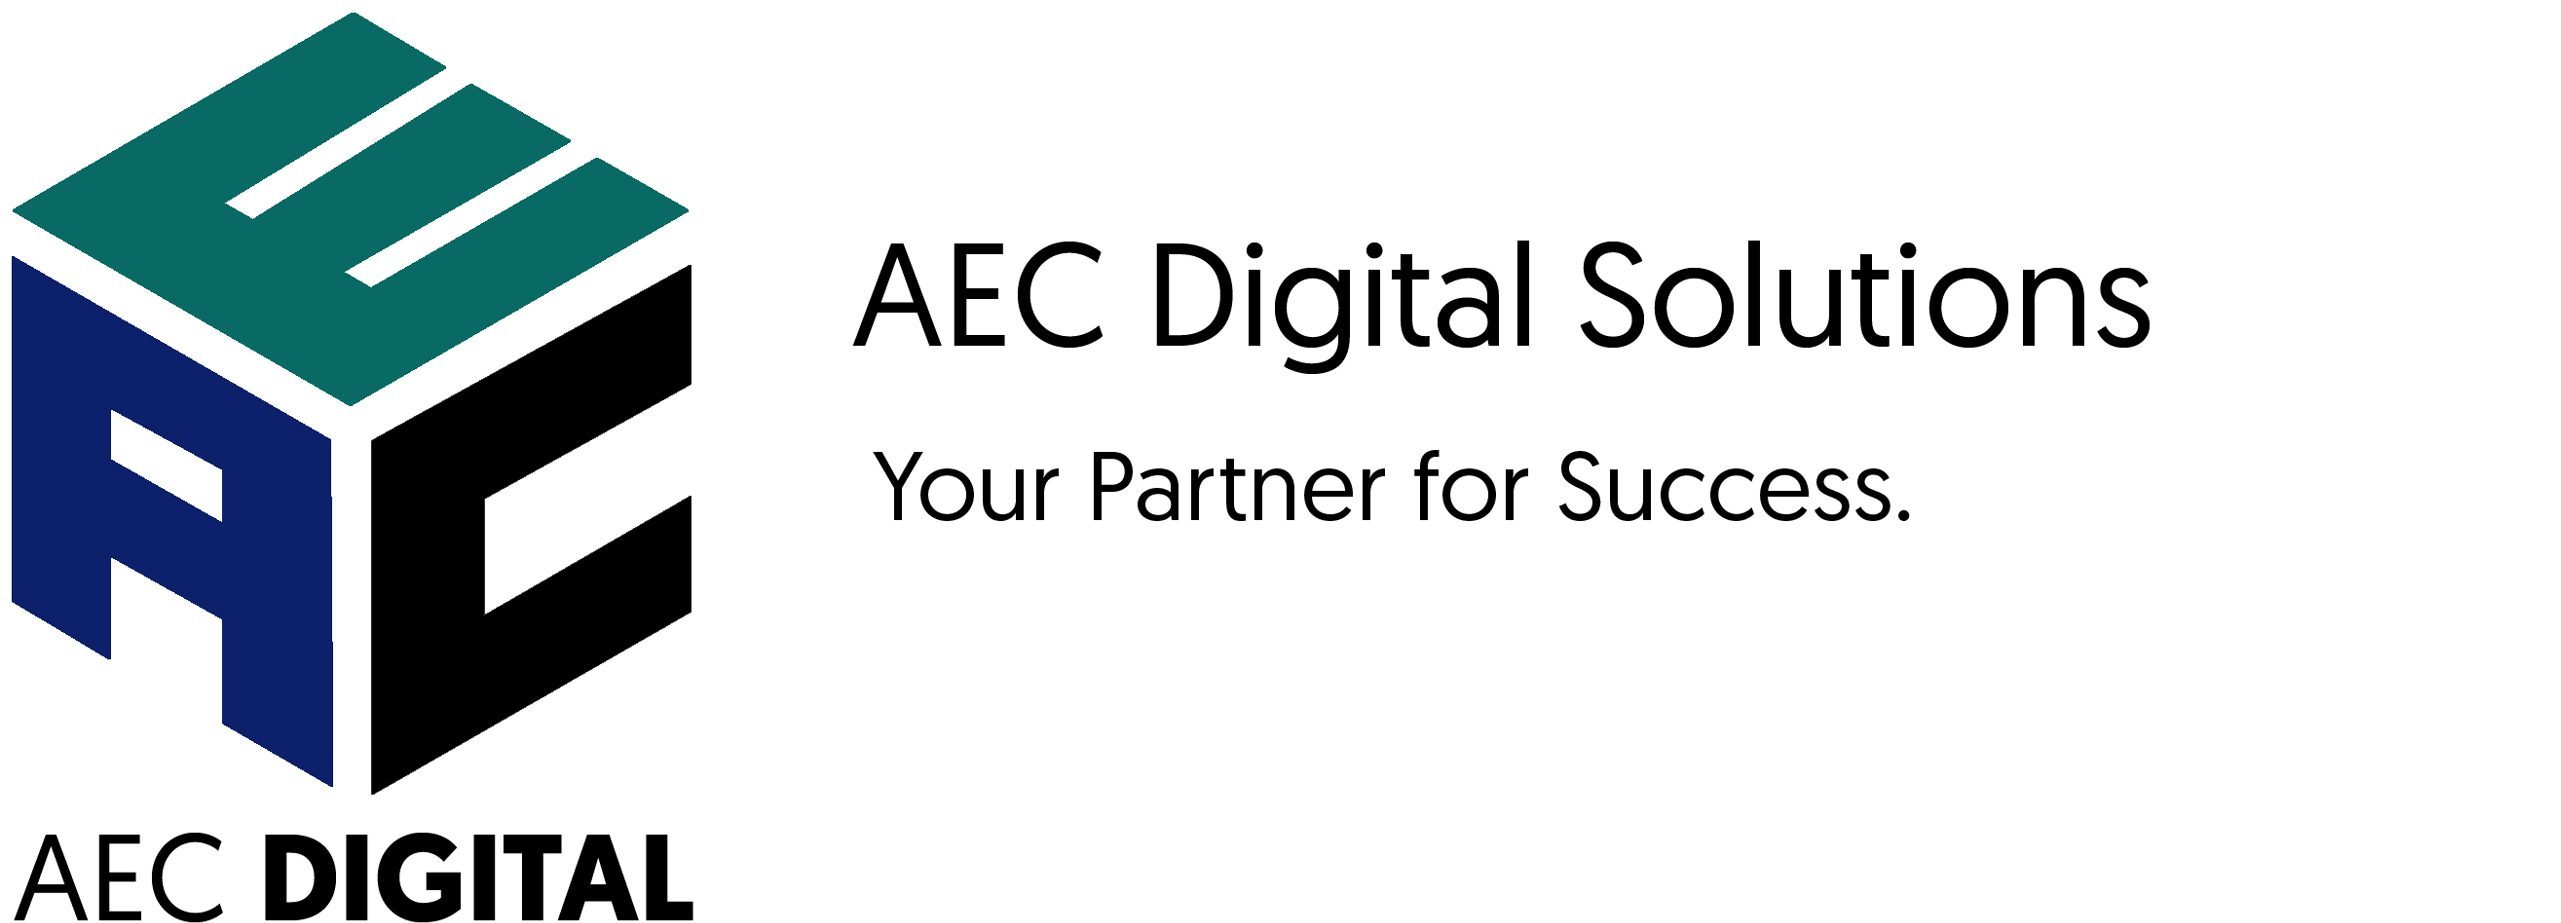 AEC Digital Solutions